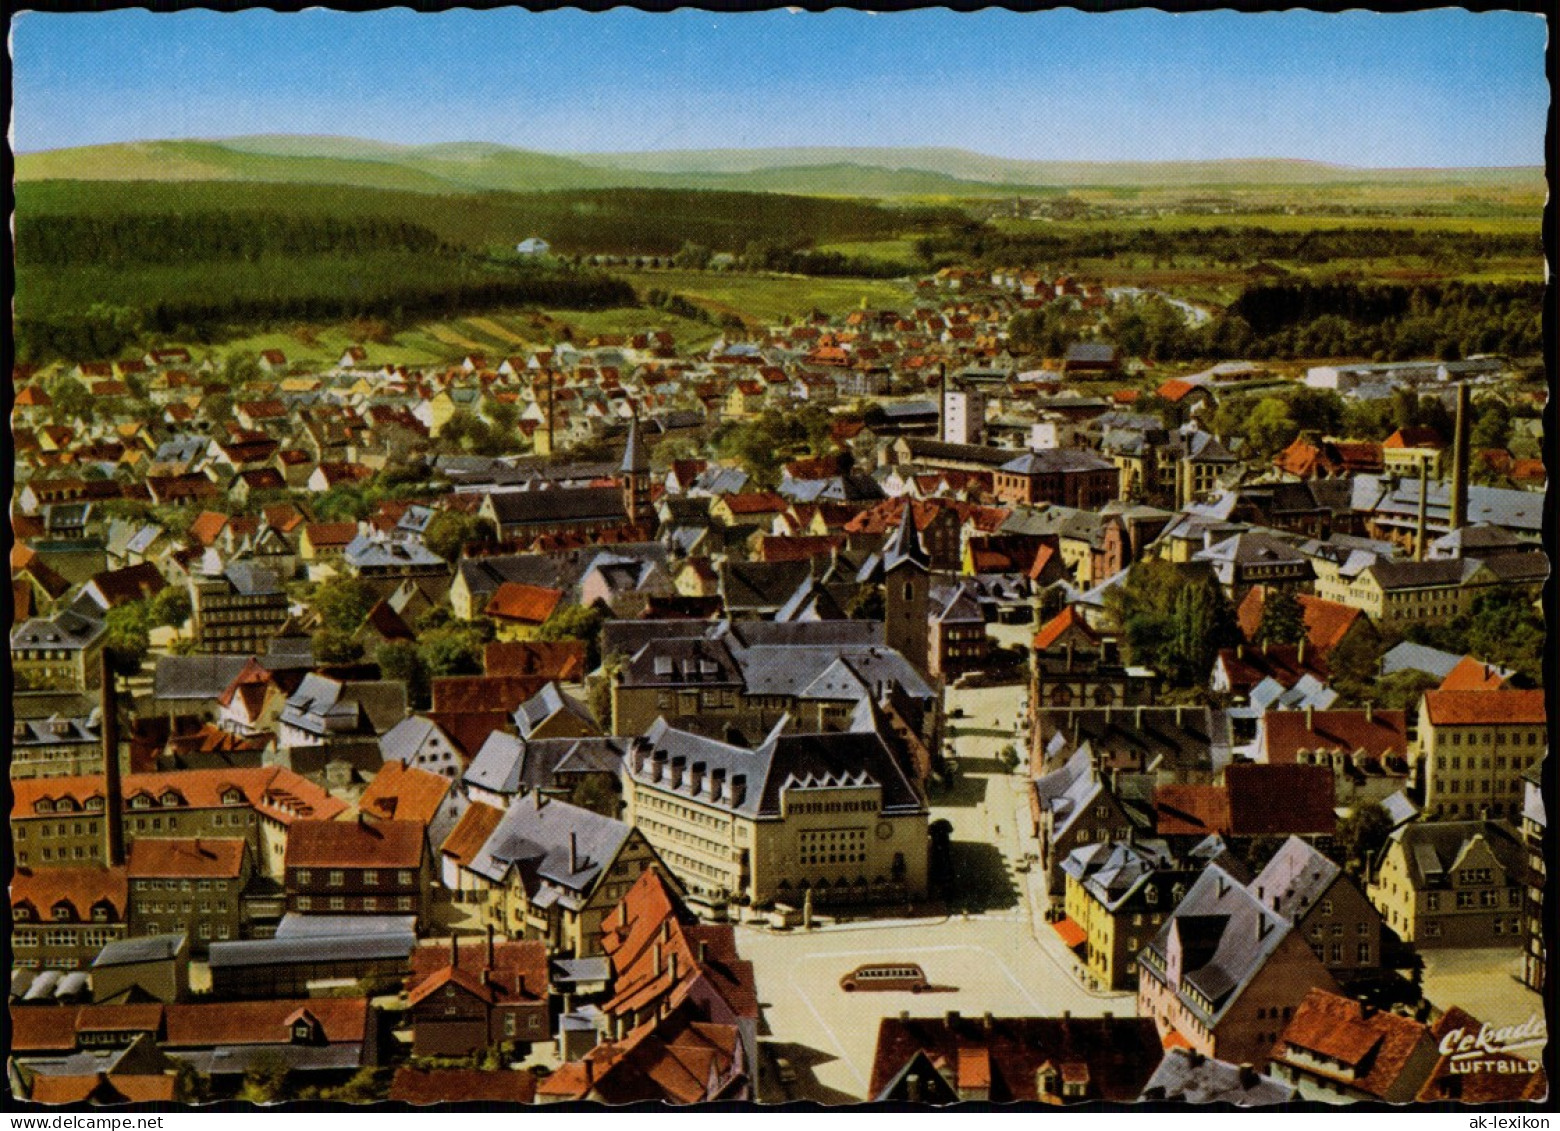 Ansichtskarte Villingen-Schwenningen Luftbild Schwenningen Am Neckar 1959 - Villingen - Schwenningen